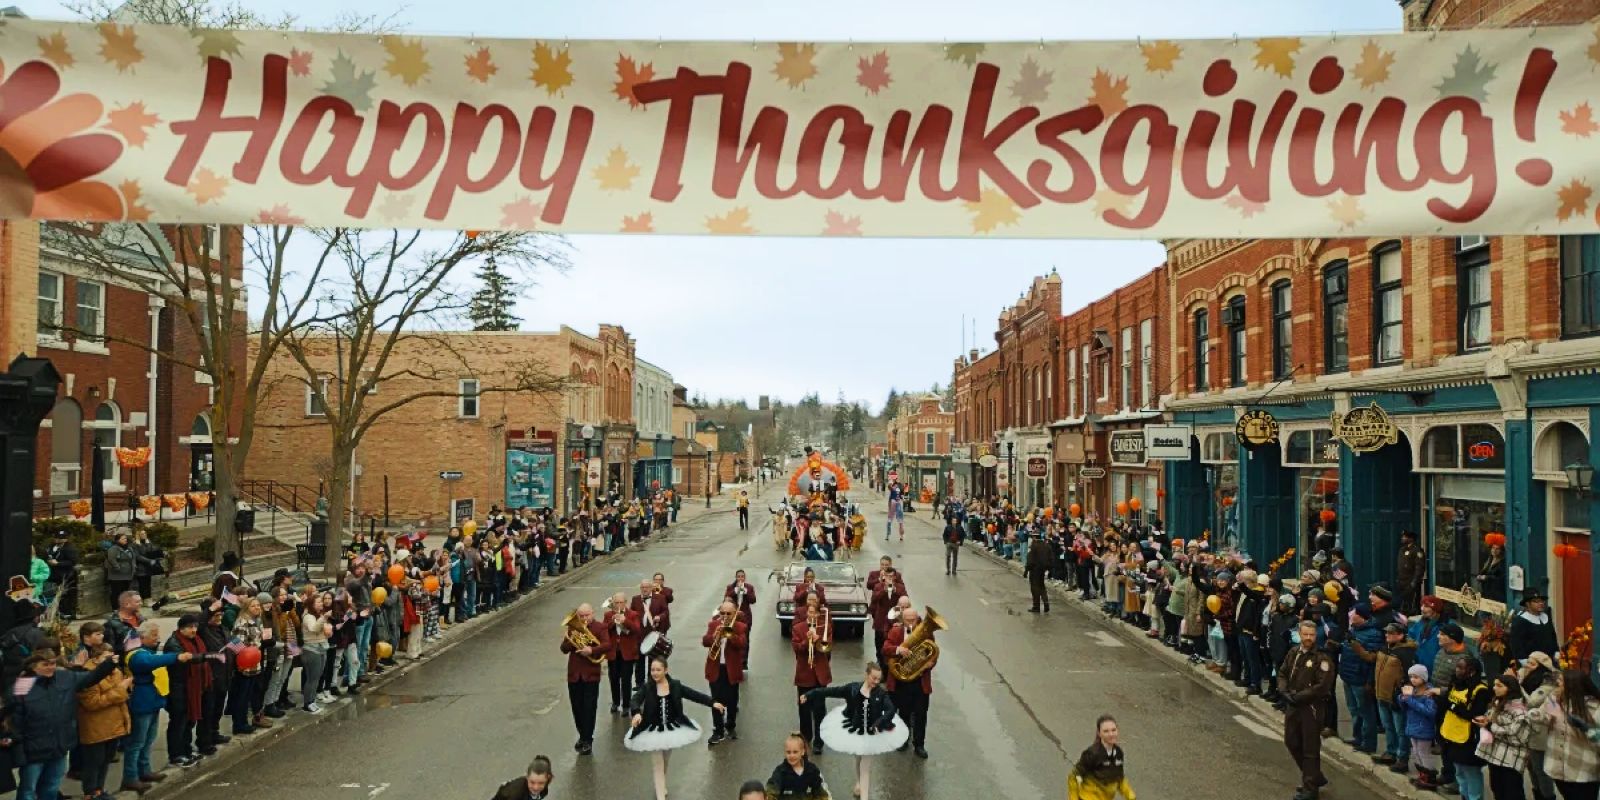 Esta imagen muestra un desfile de Acción de Gracias con gente mirando desde las aceras.